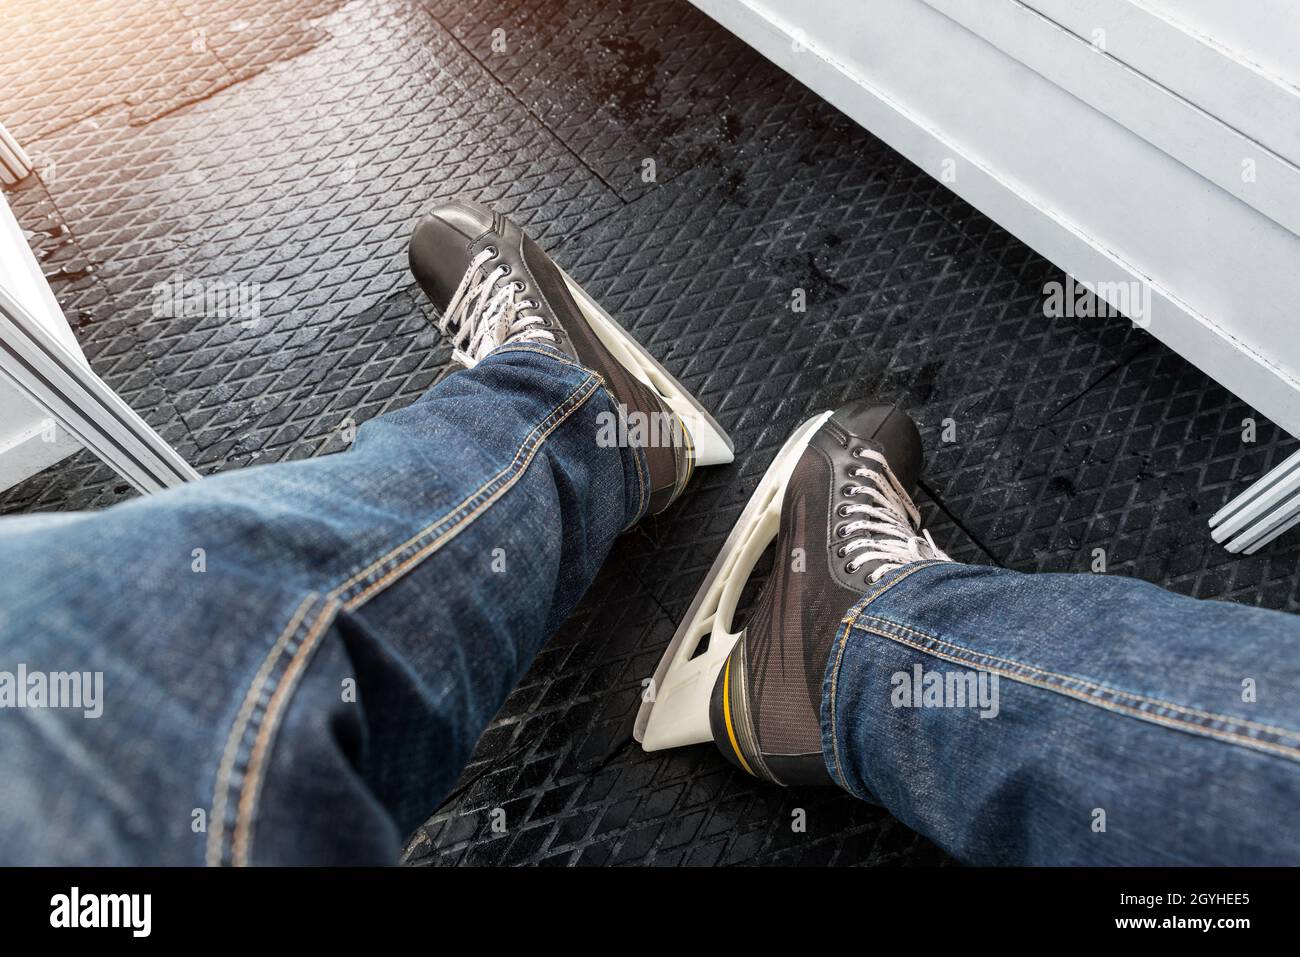 Nahaufnahme der Beine männlicher Personen in Jeans und schwarzen  Leih-Skating-Stiefeln, die auf einer rutschfesten weichen Gummimatte im  Umkleidekabinen stehen Stockfotografie - Alamy